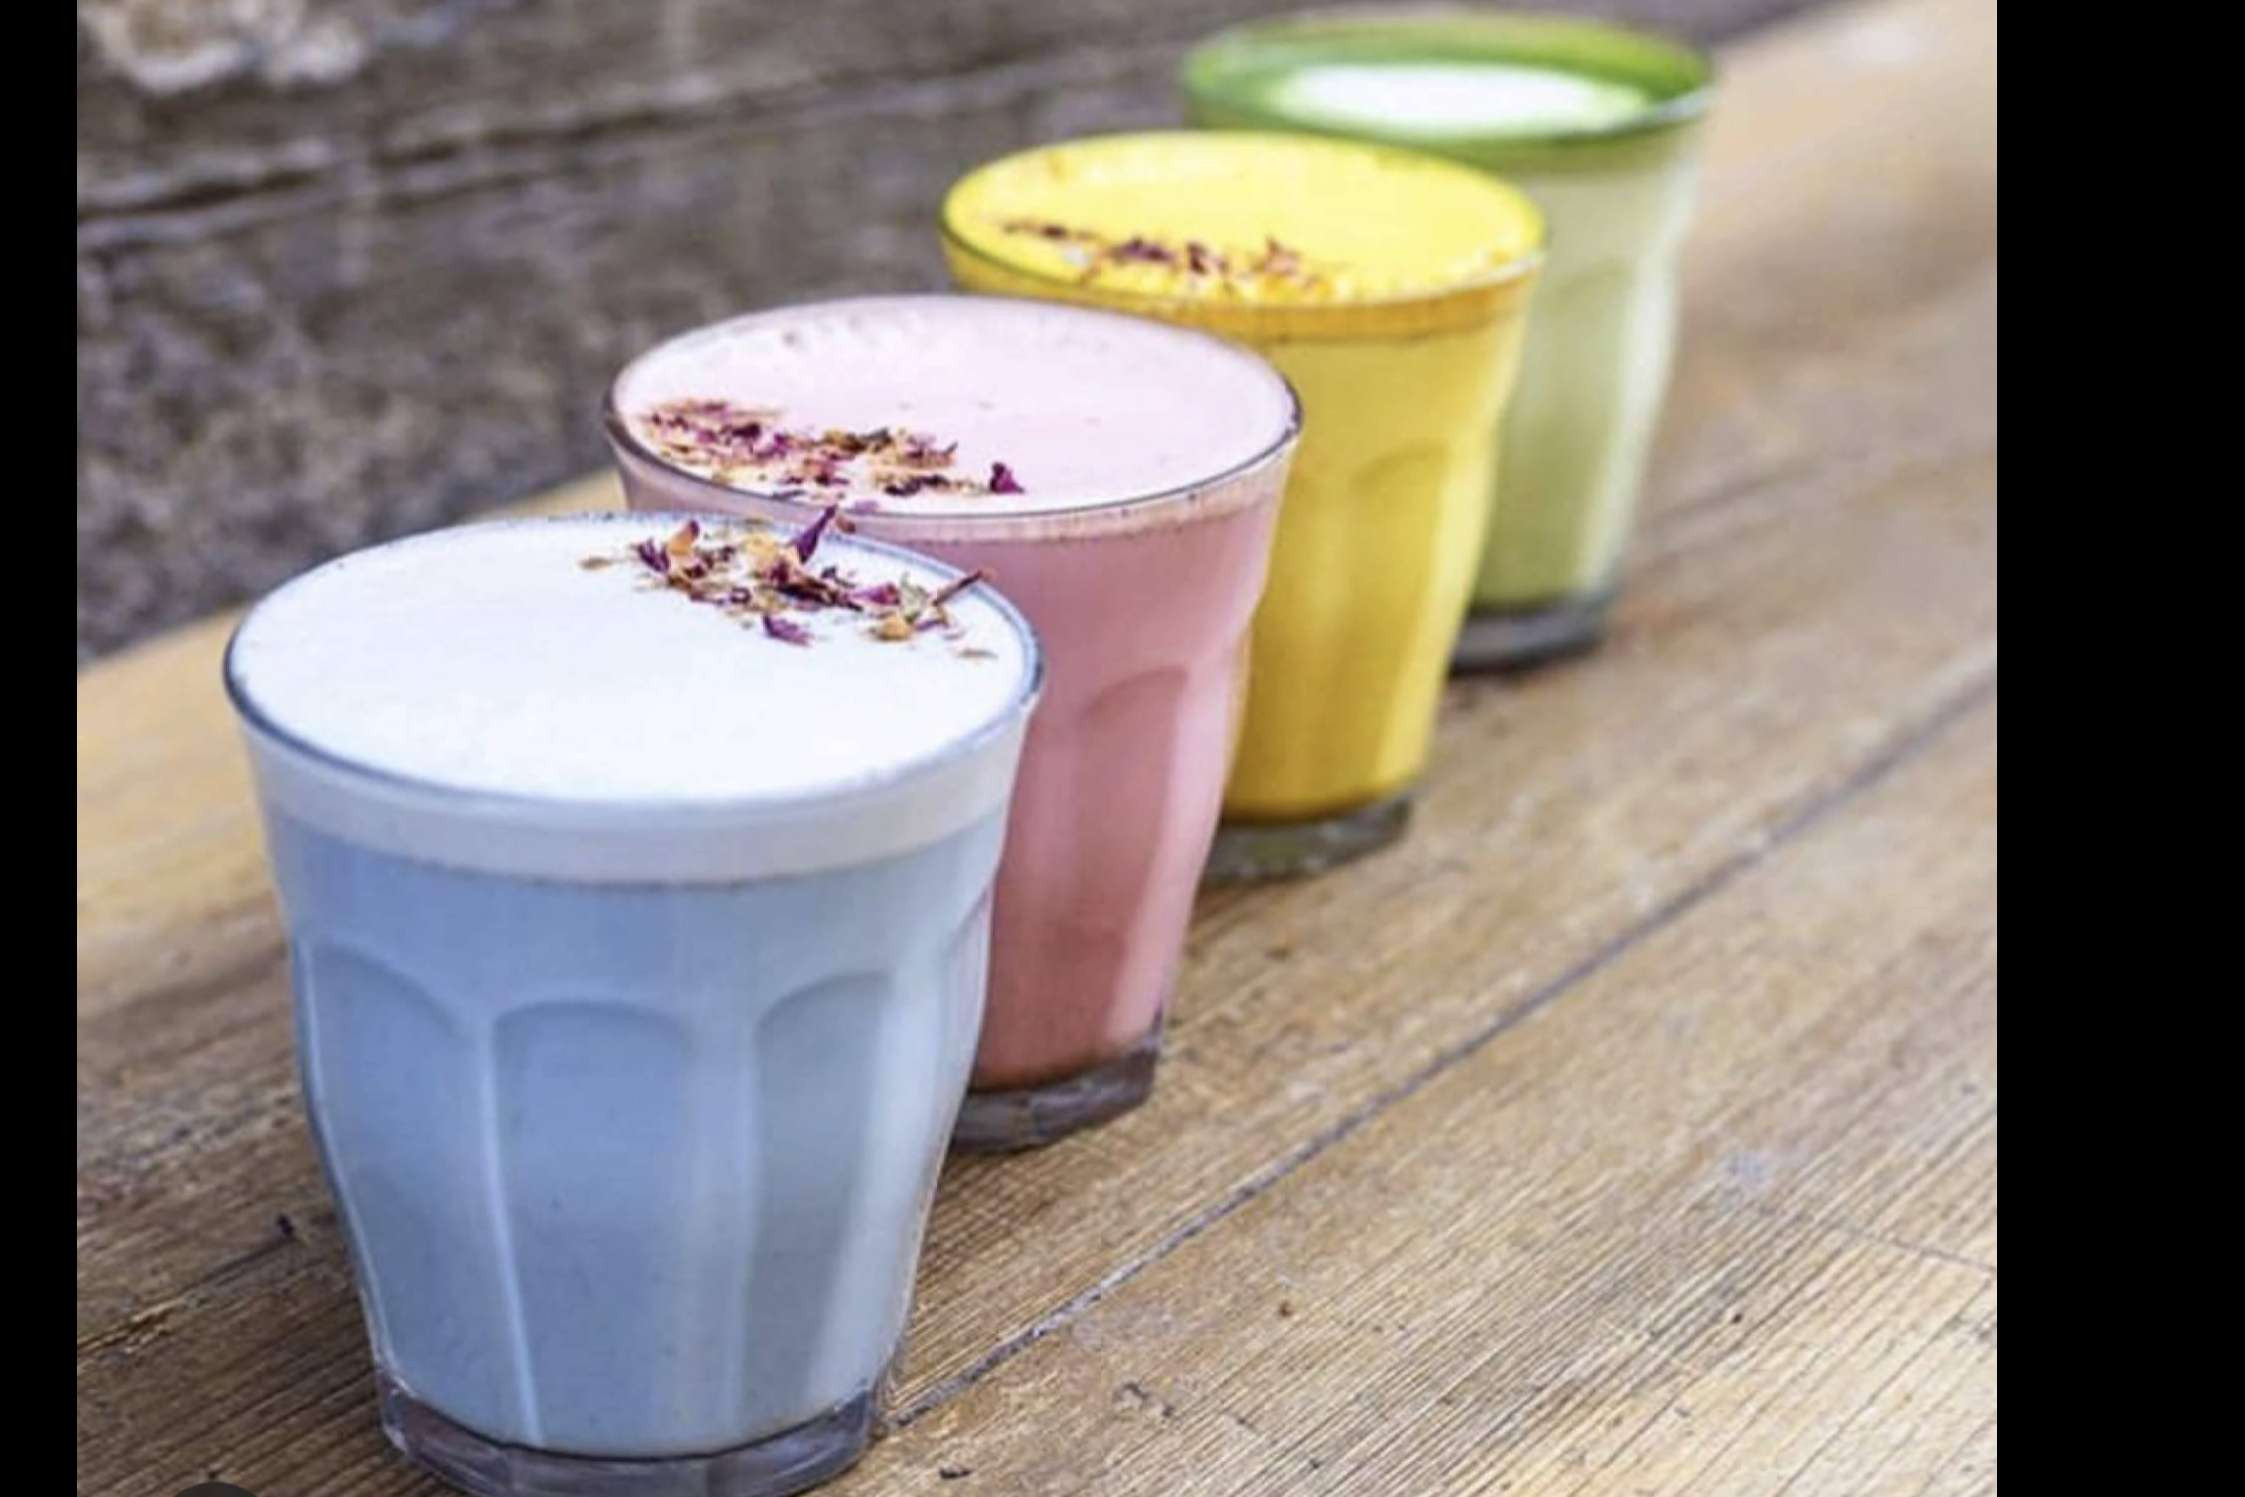  Chimo Chai presenta todas las versiones que ofrece de la milenaria bebida chai latte 